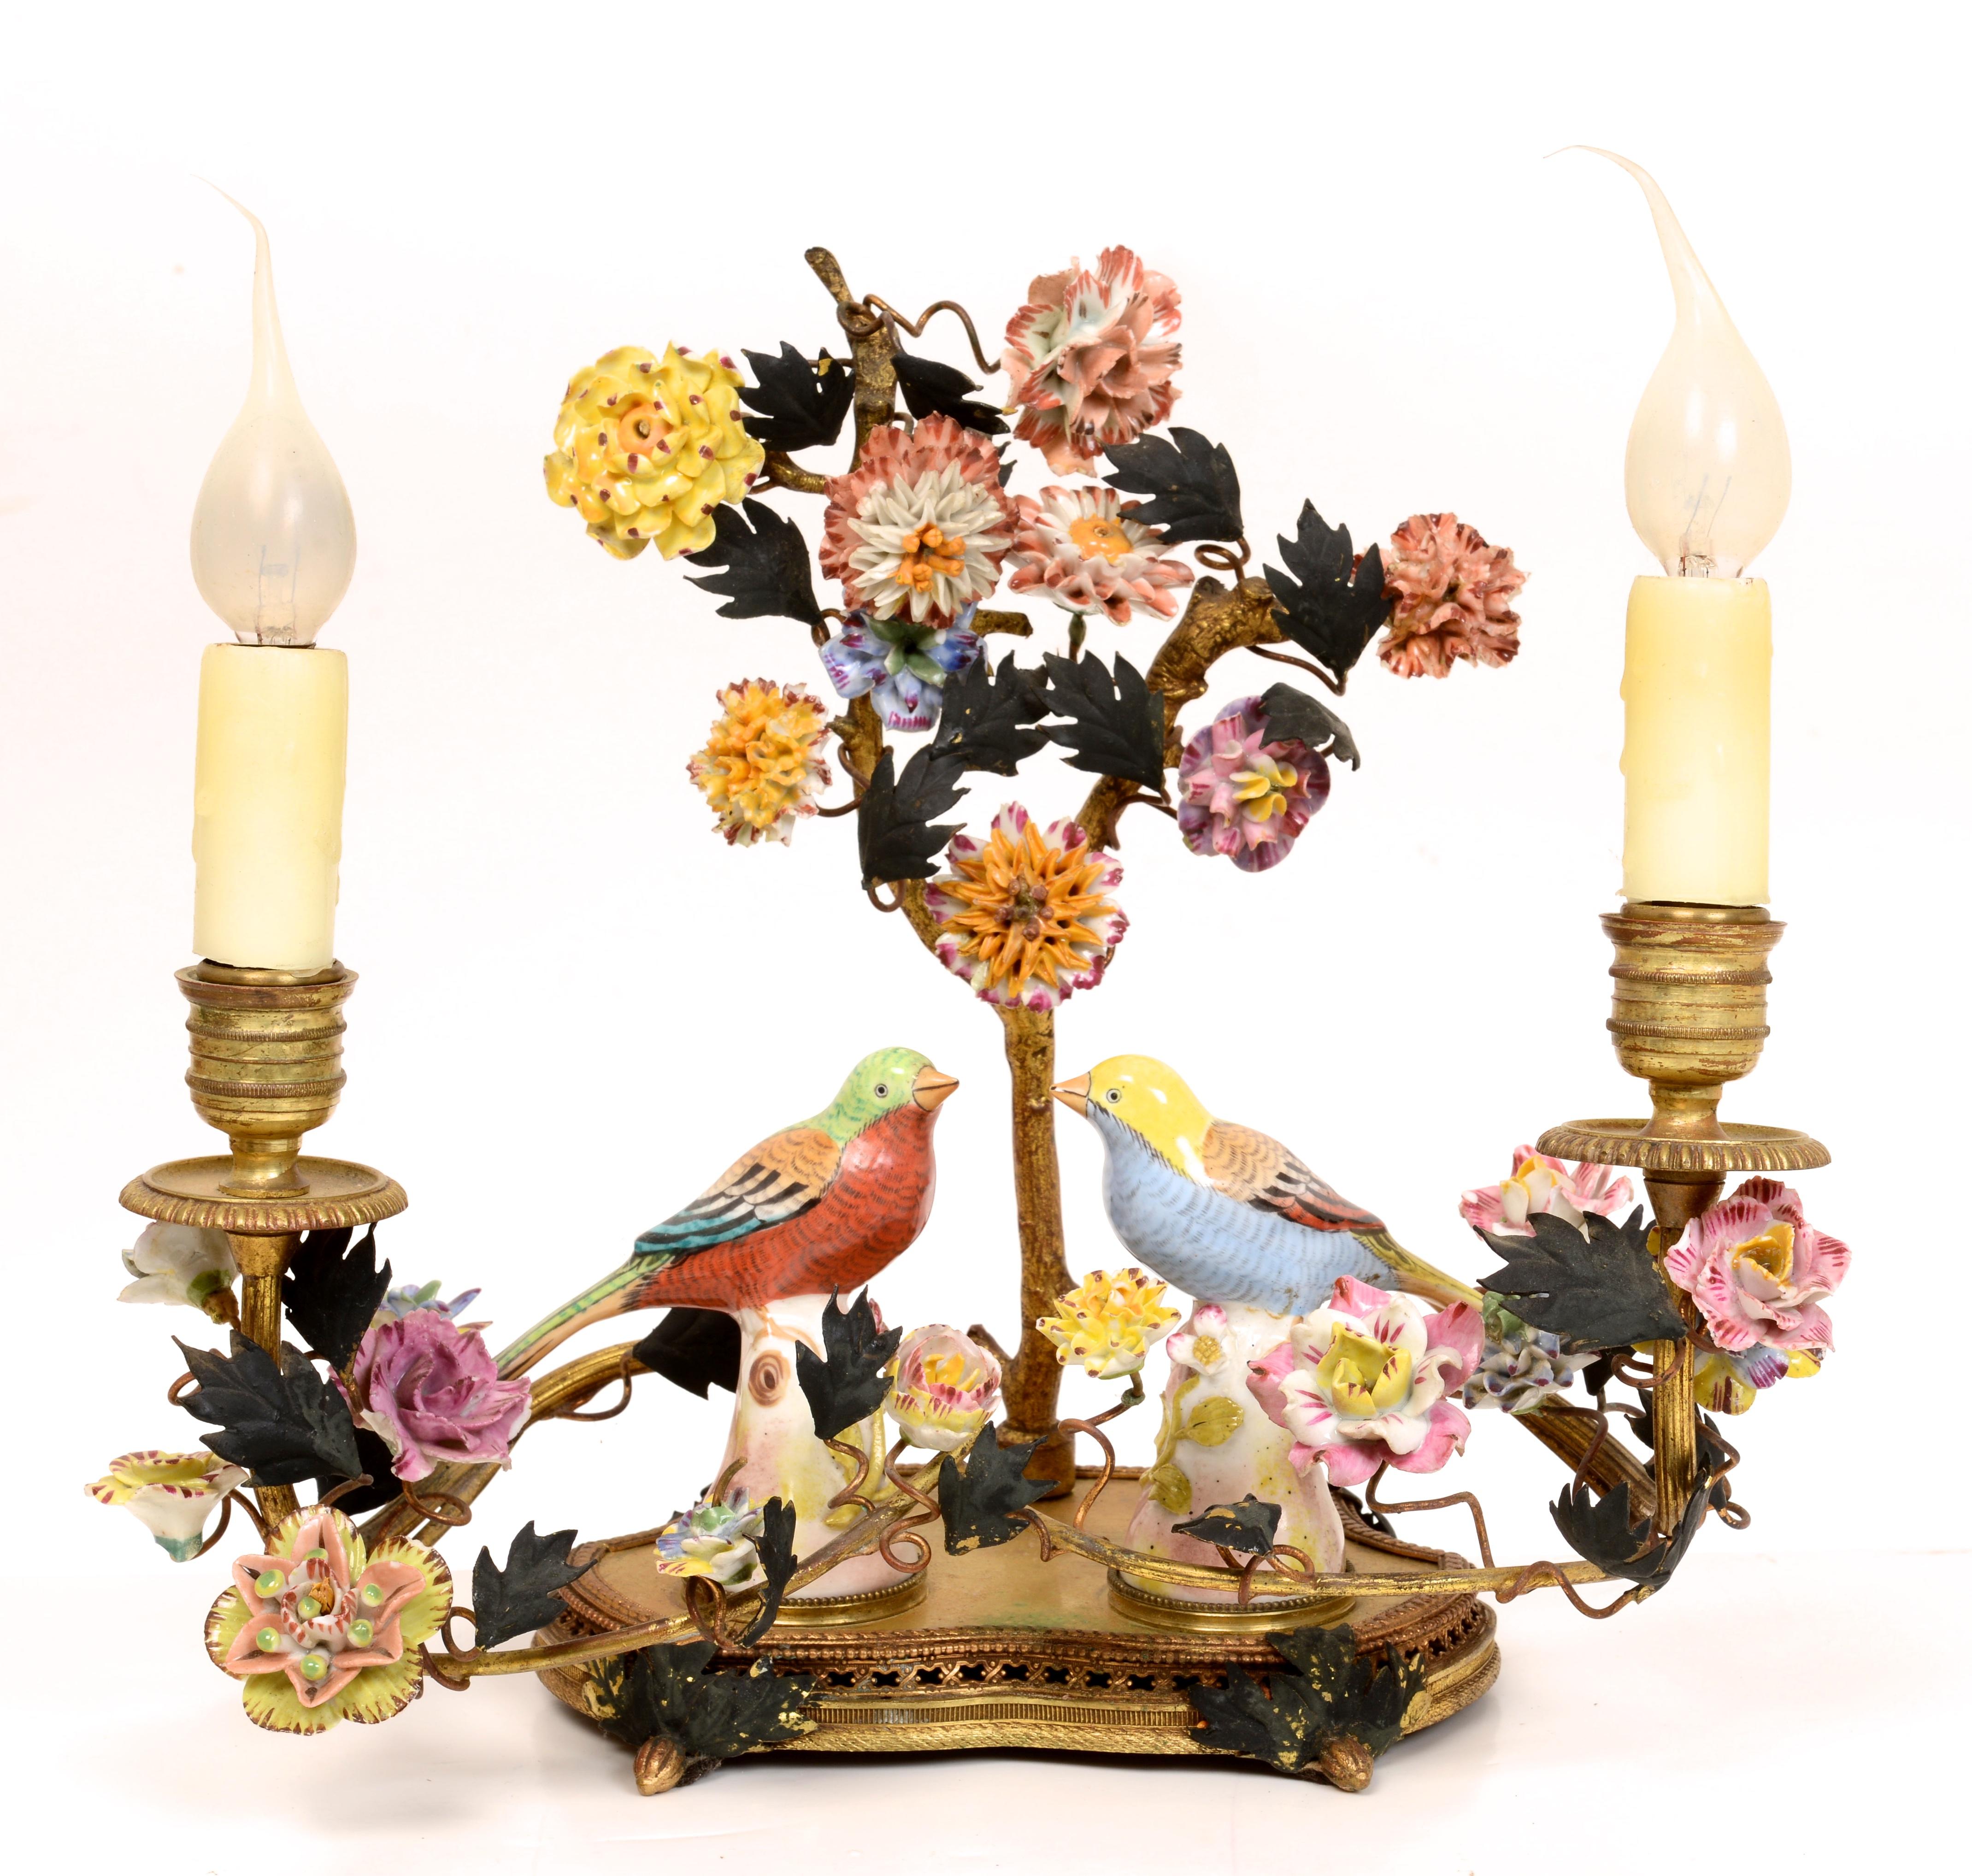 Boudoir-Lampe aus vergoldetem Messing und Porzellan, um 1920. Goldbronze-Messing oder Bronze mit kalt bemalten Details. In der Mitte der Rückseite befindet sich eine Baumform mit 2 Zweigen und einer Blumenranke aus Porzellan. Die Kerzenarme sind mit